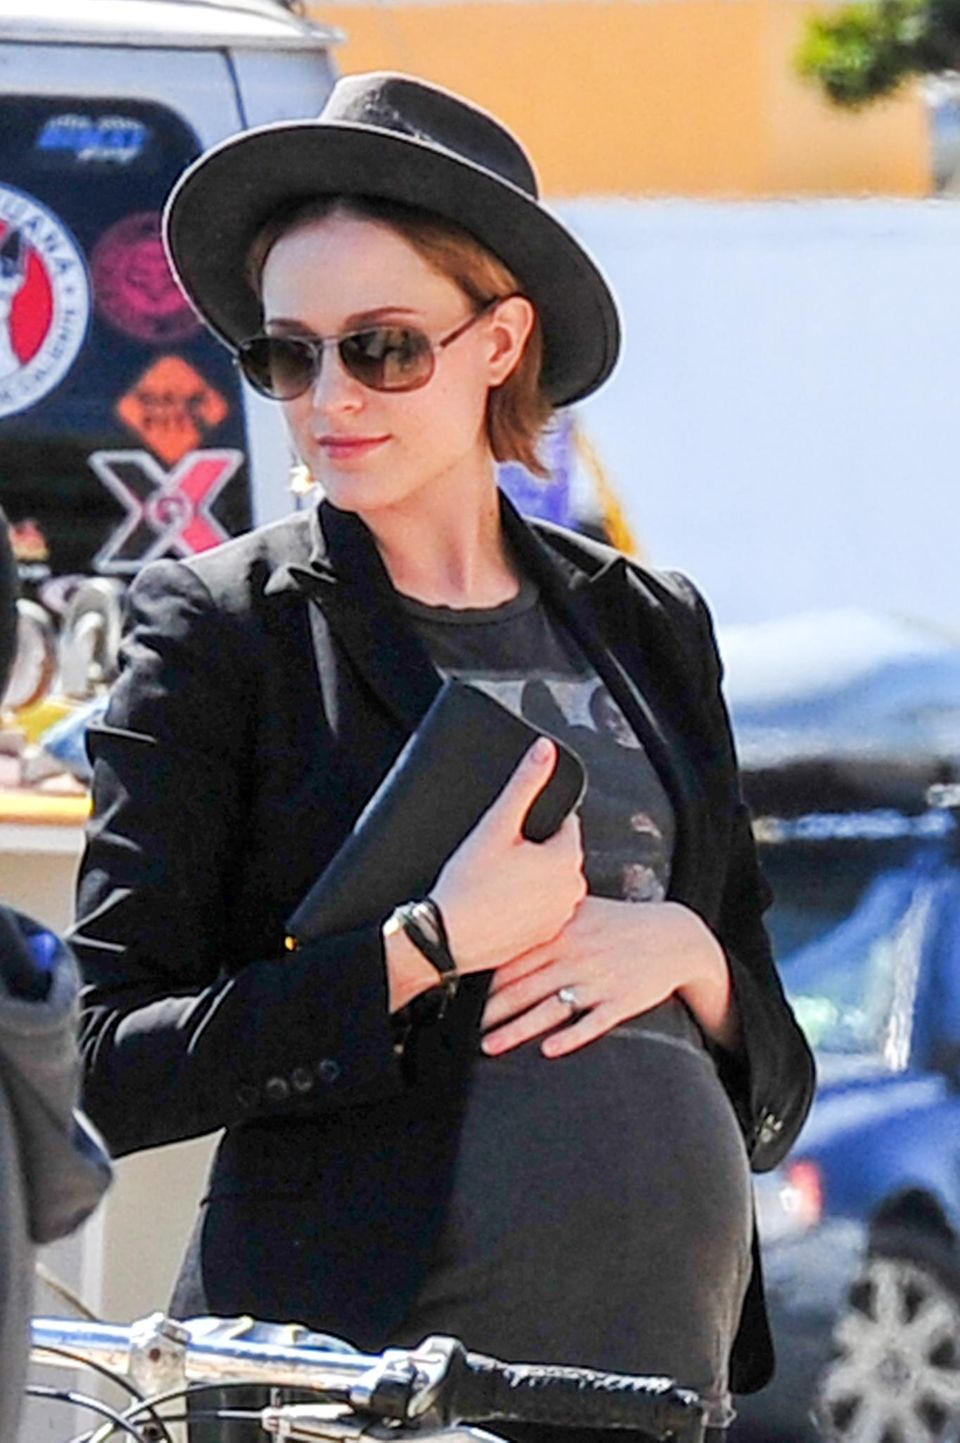 17. Juli 2013: Die schwangere Schauspielerin Evan Rachel Wood kommt aus einem Café in Venice.